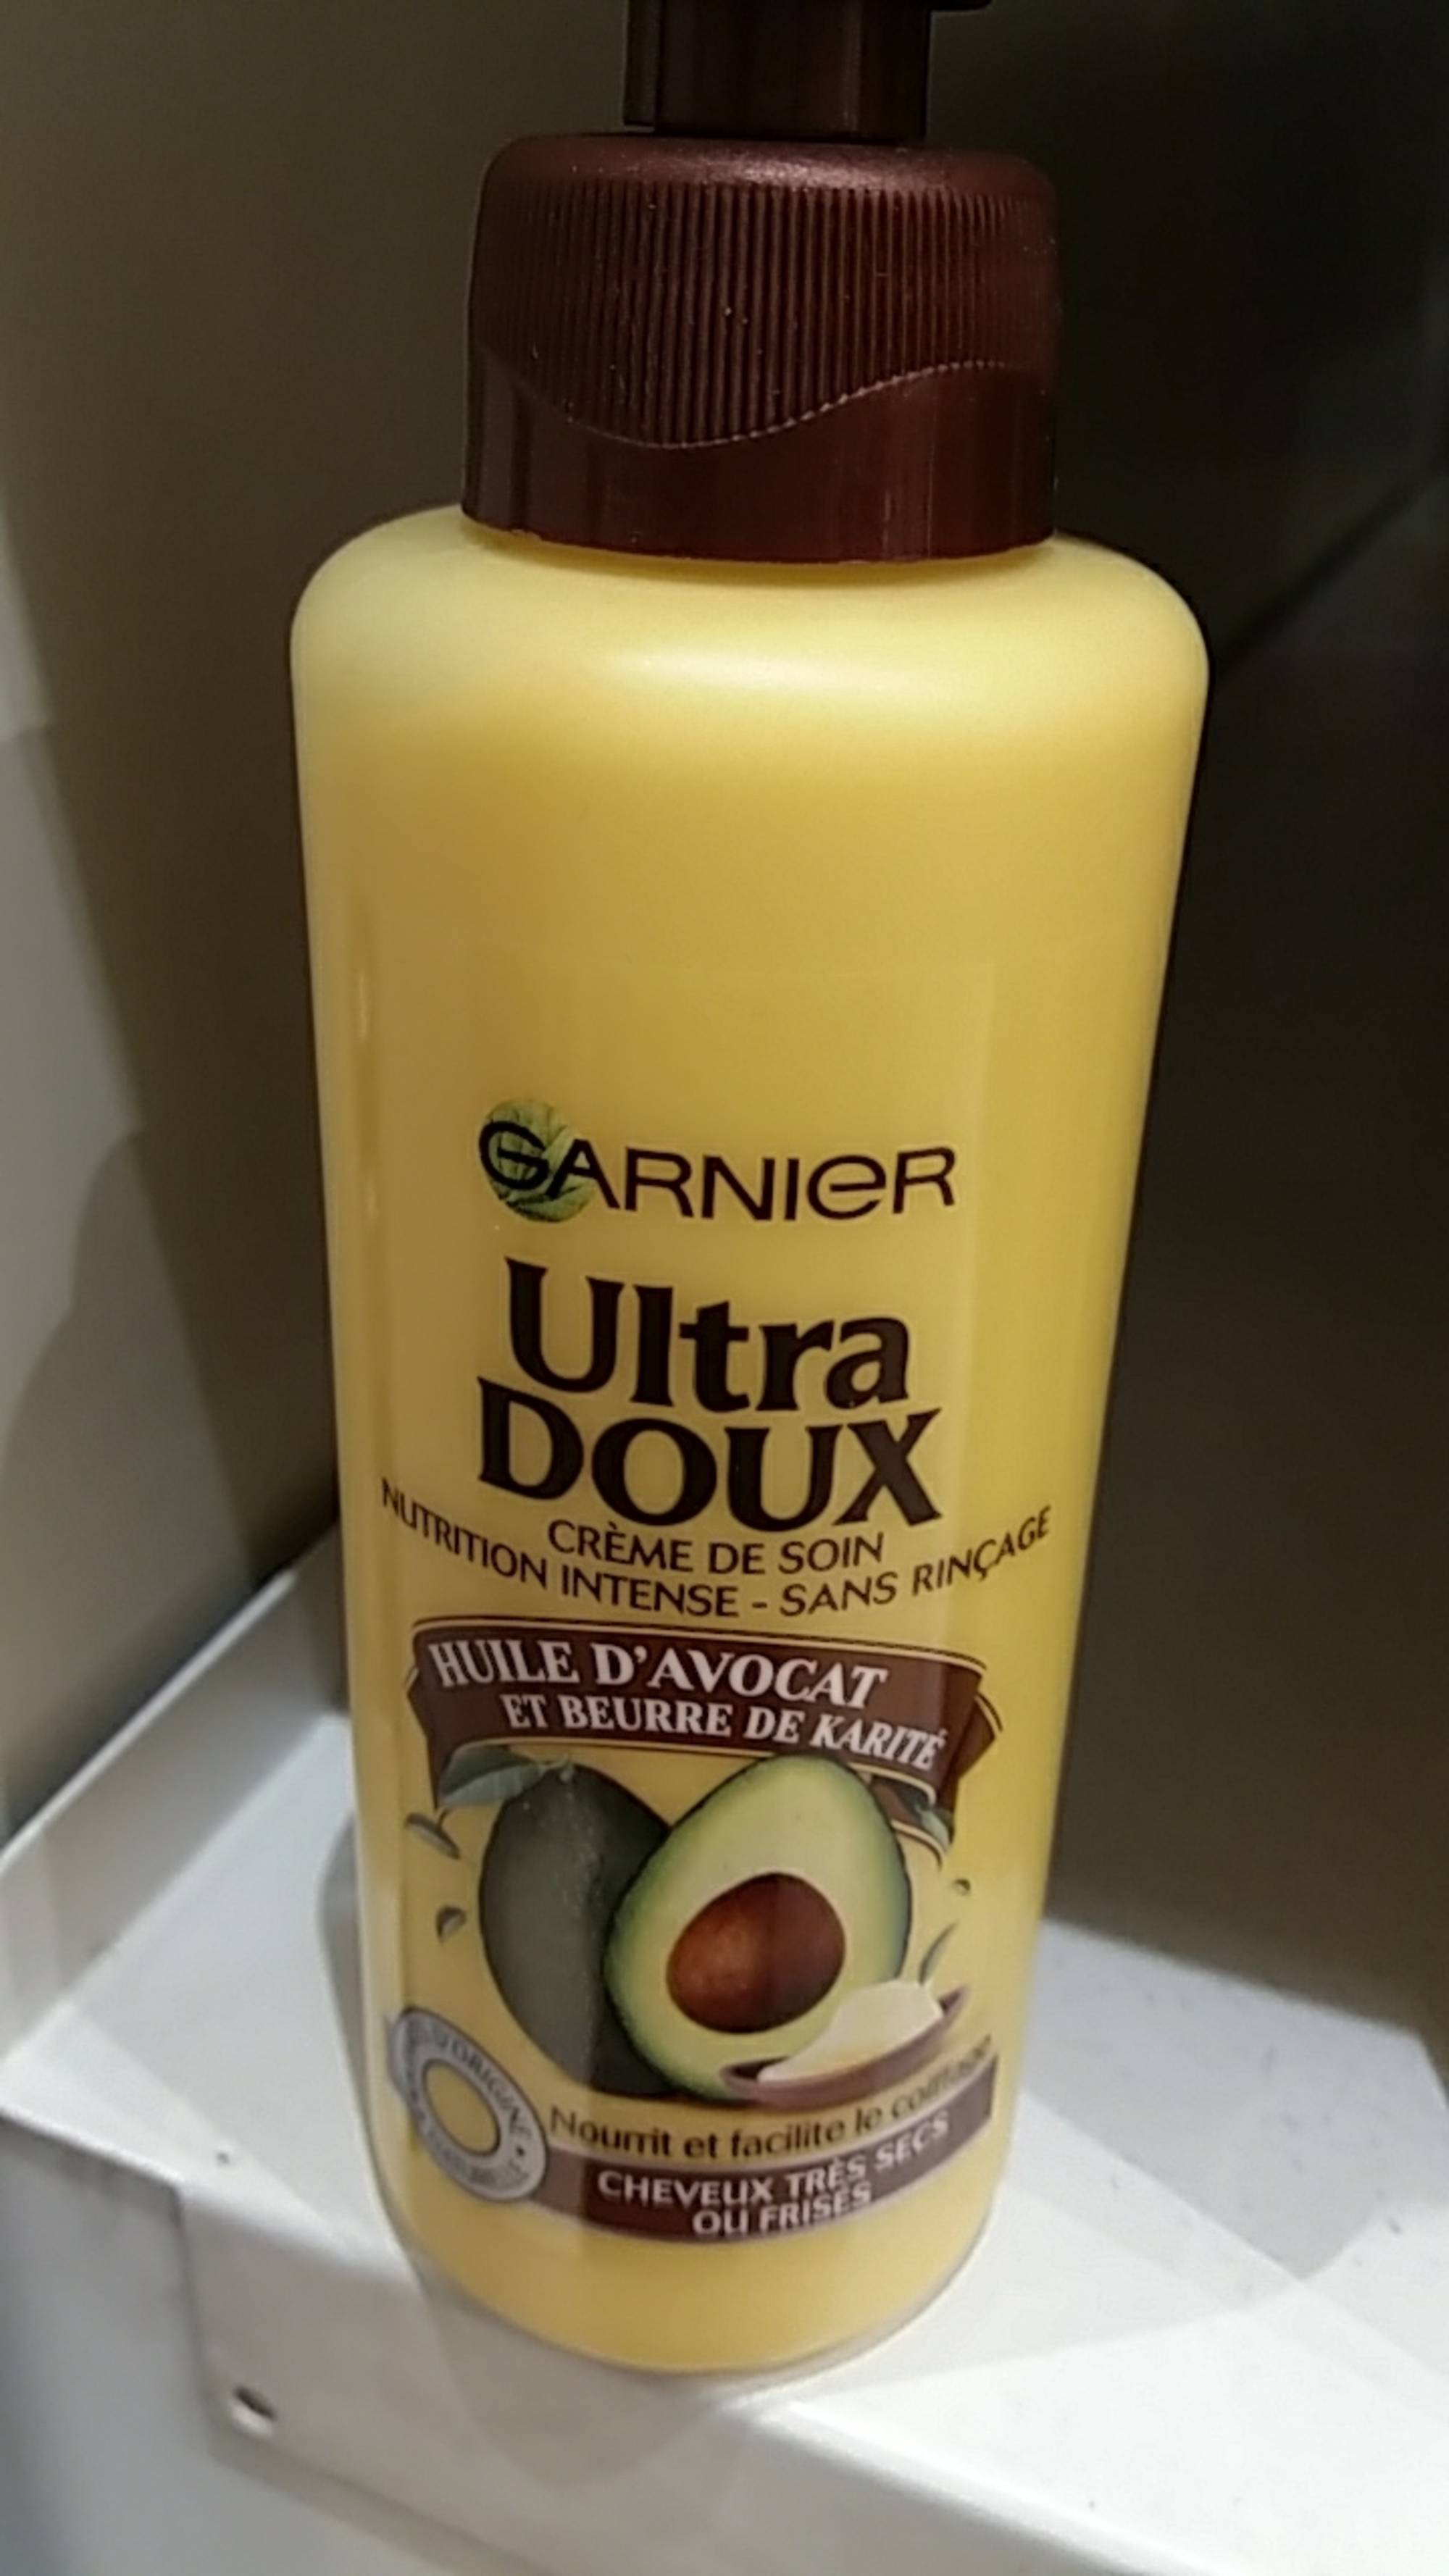 GARNIER - Ultra doux - Crème de soin